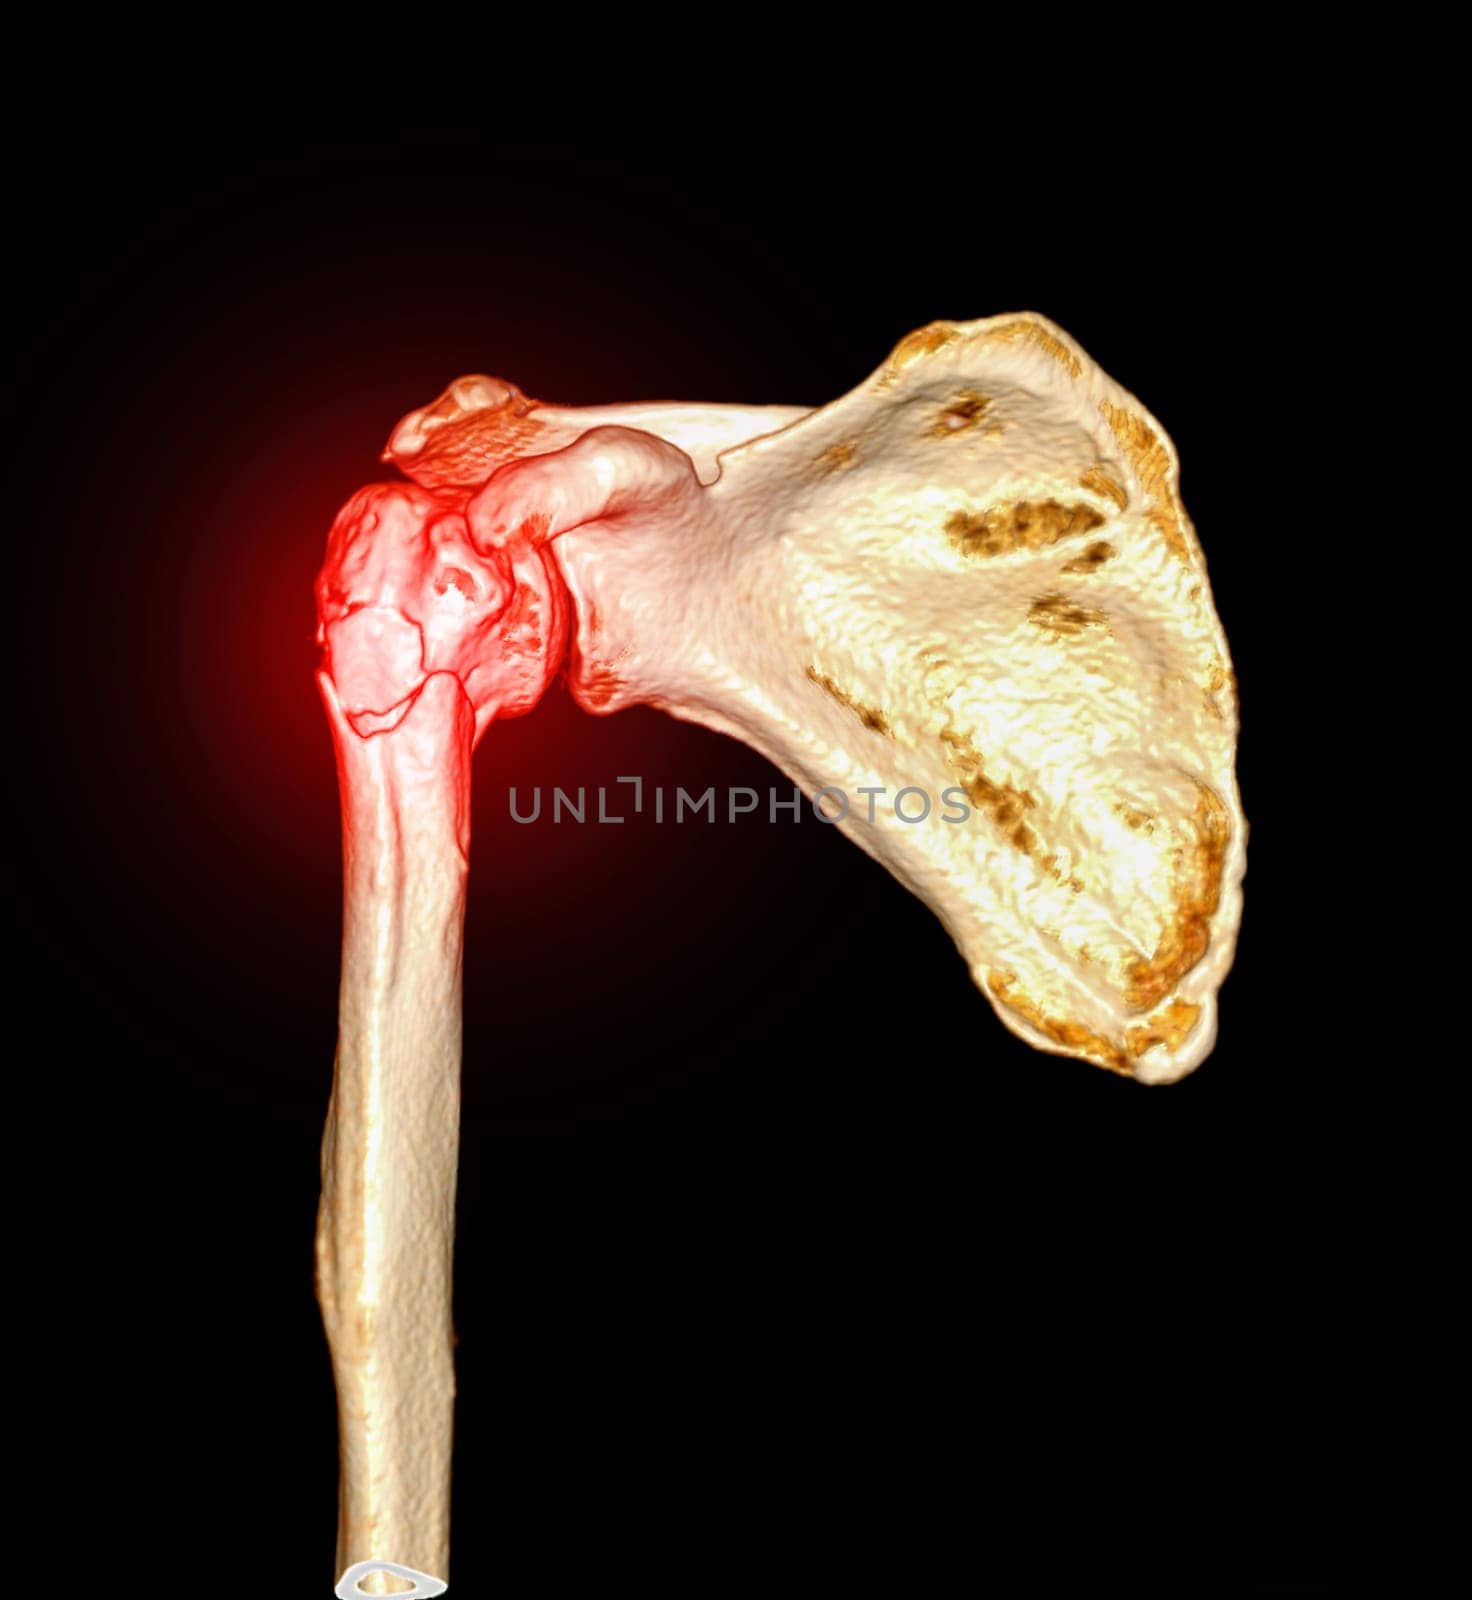 CT scan 3D rendering of Left shoulder showing fracture head of humerus .